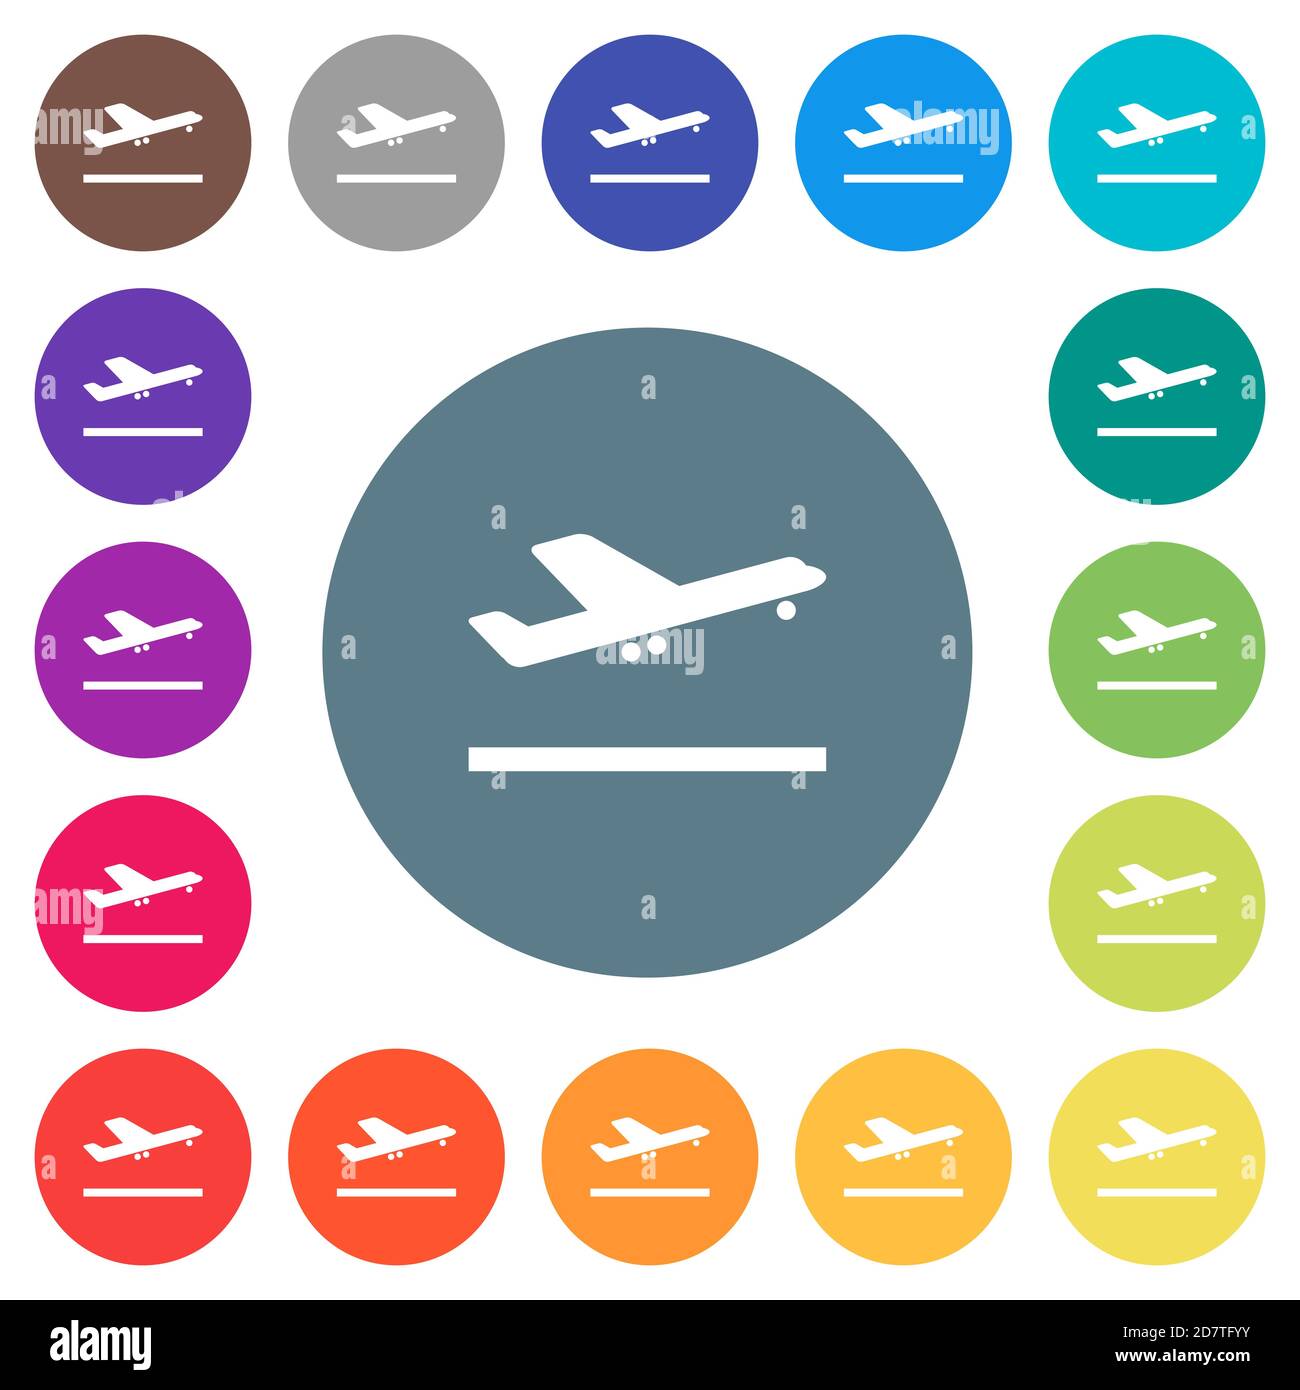 Flugzeug abheben flache weiße Symbole auf runden Farbhintergründen. 17 Hintergrundfarbvarianten sind enthalten. Stock Vektor